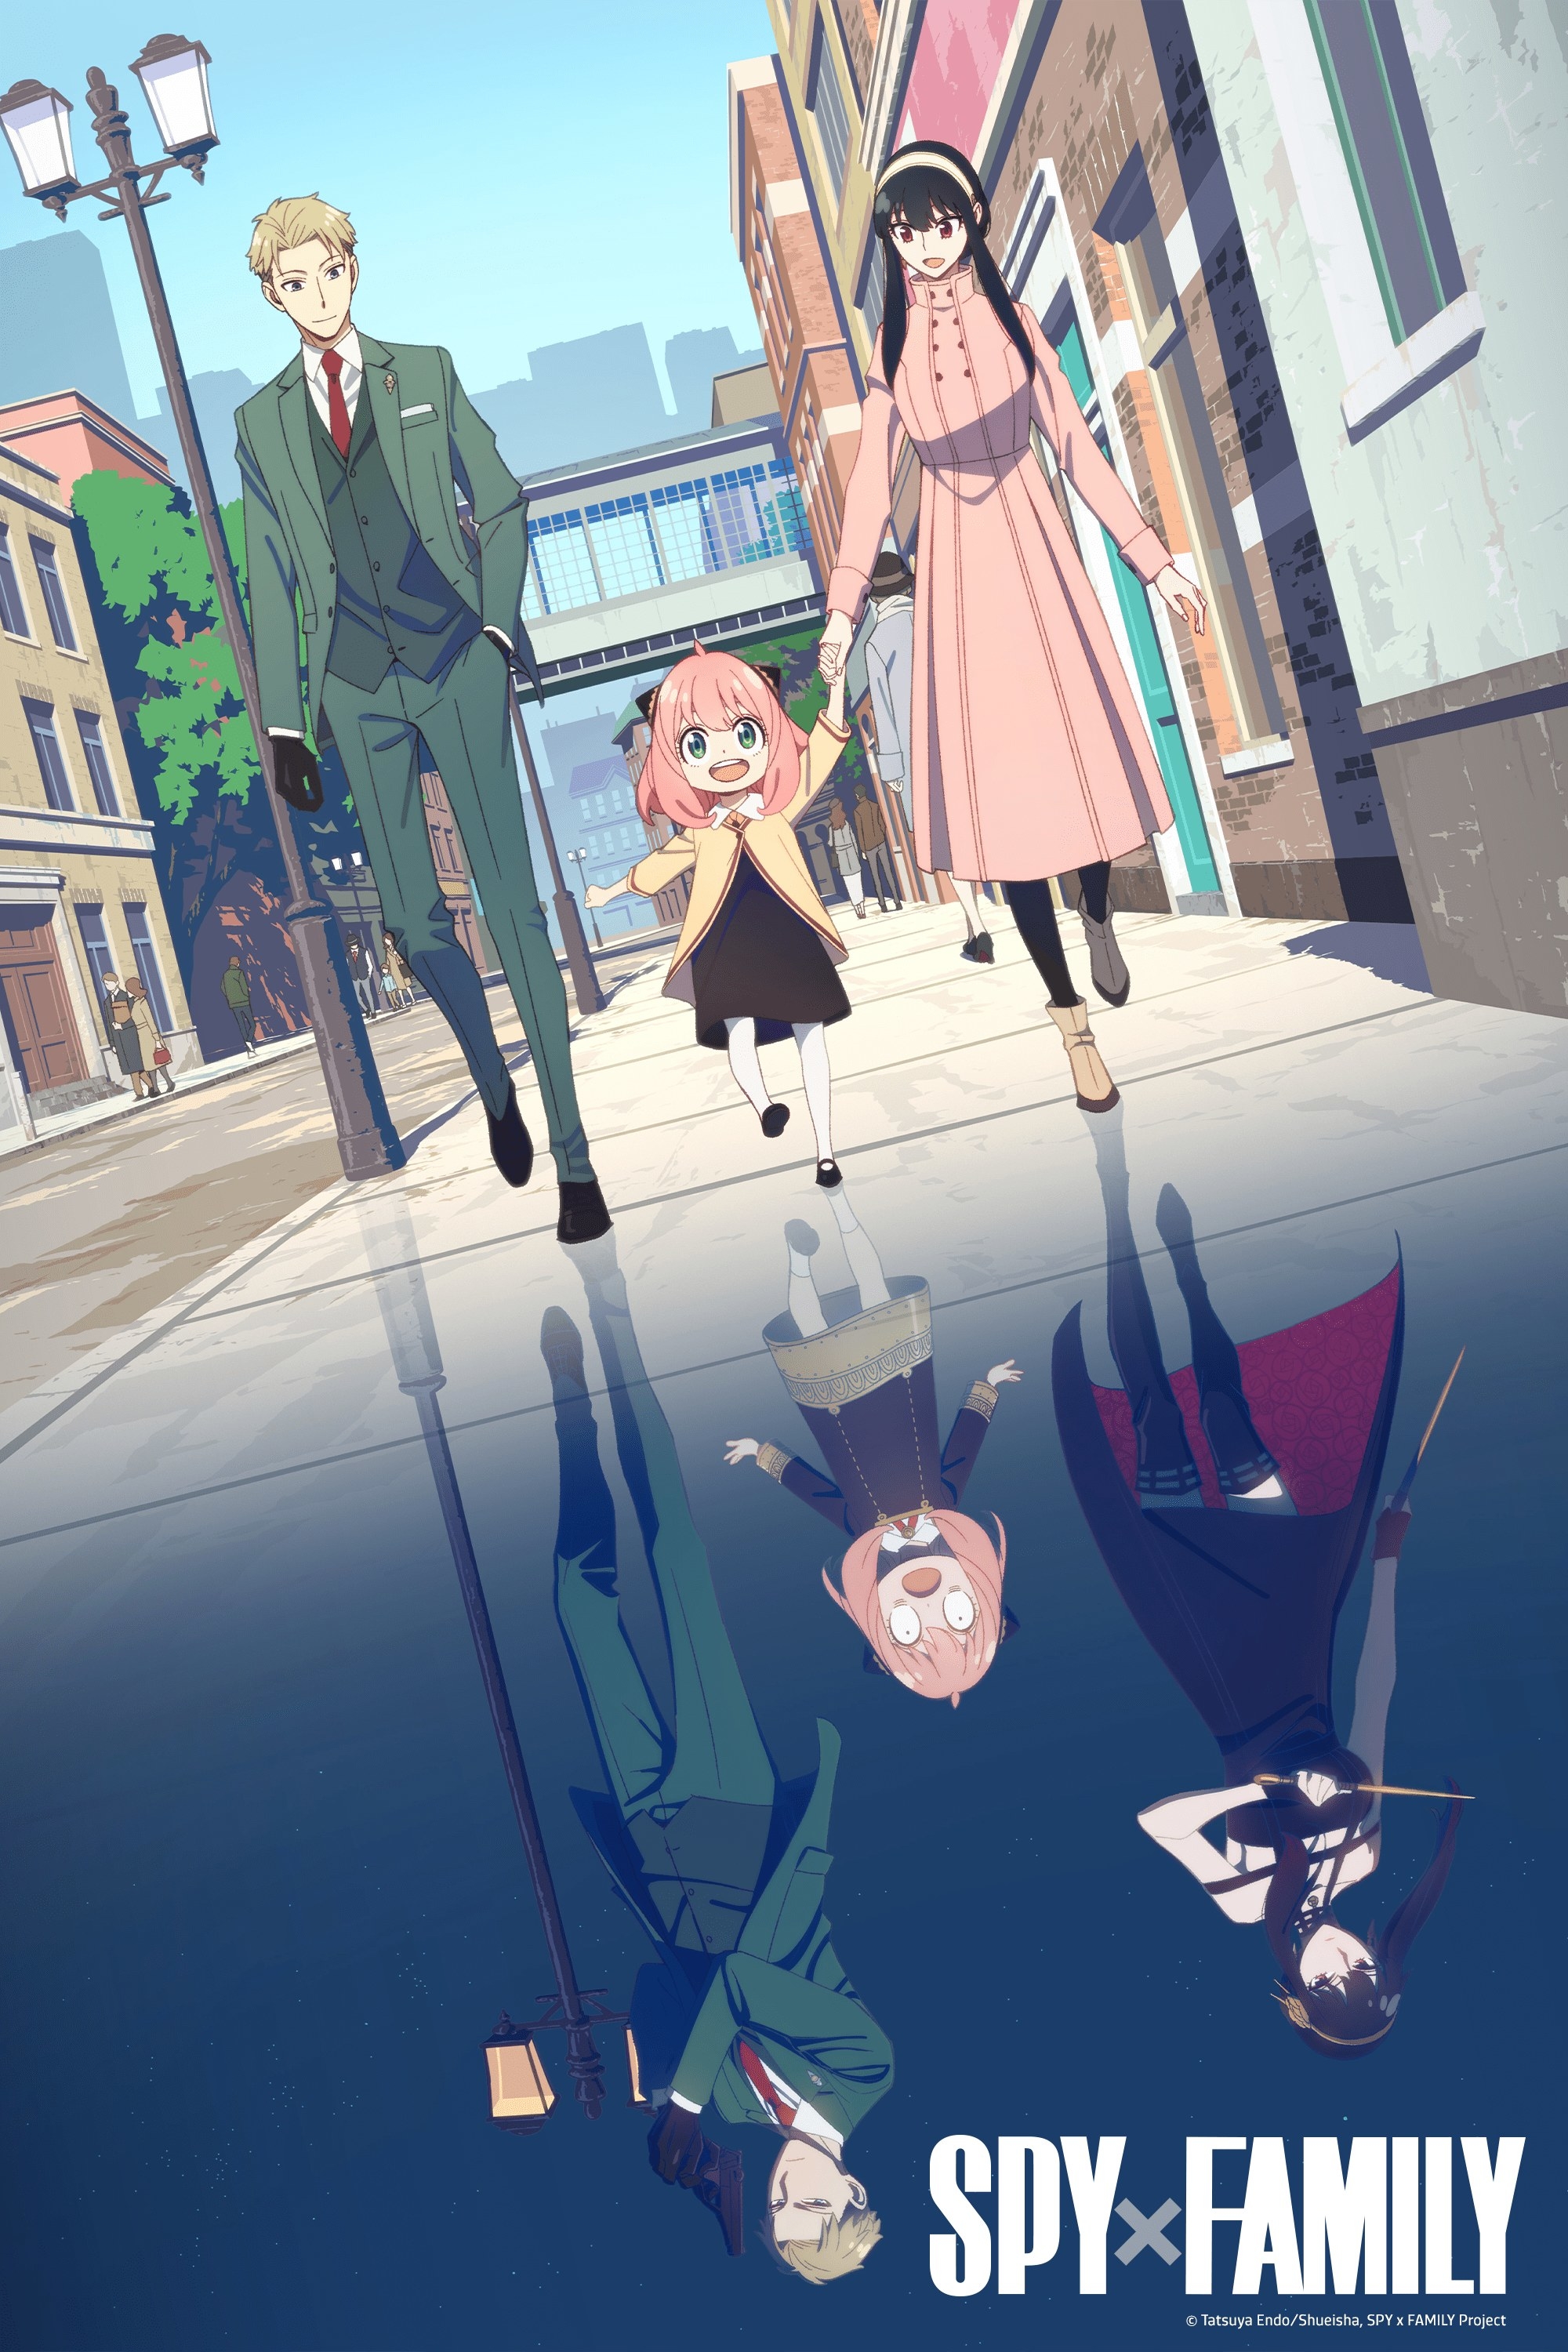 Crunchyroll  SPY x FAMILY TV Anime Casts 4 Voices Behind Anyas Classmates  at Eden Academy